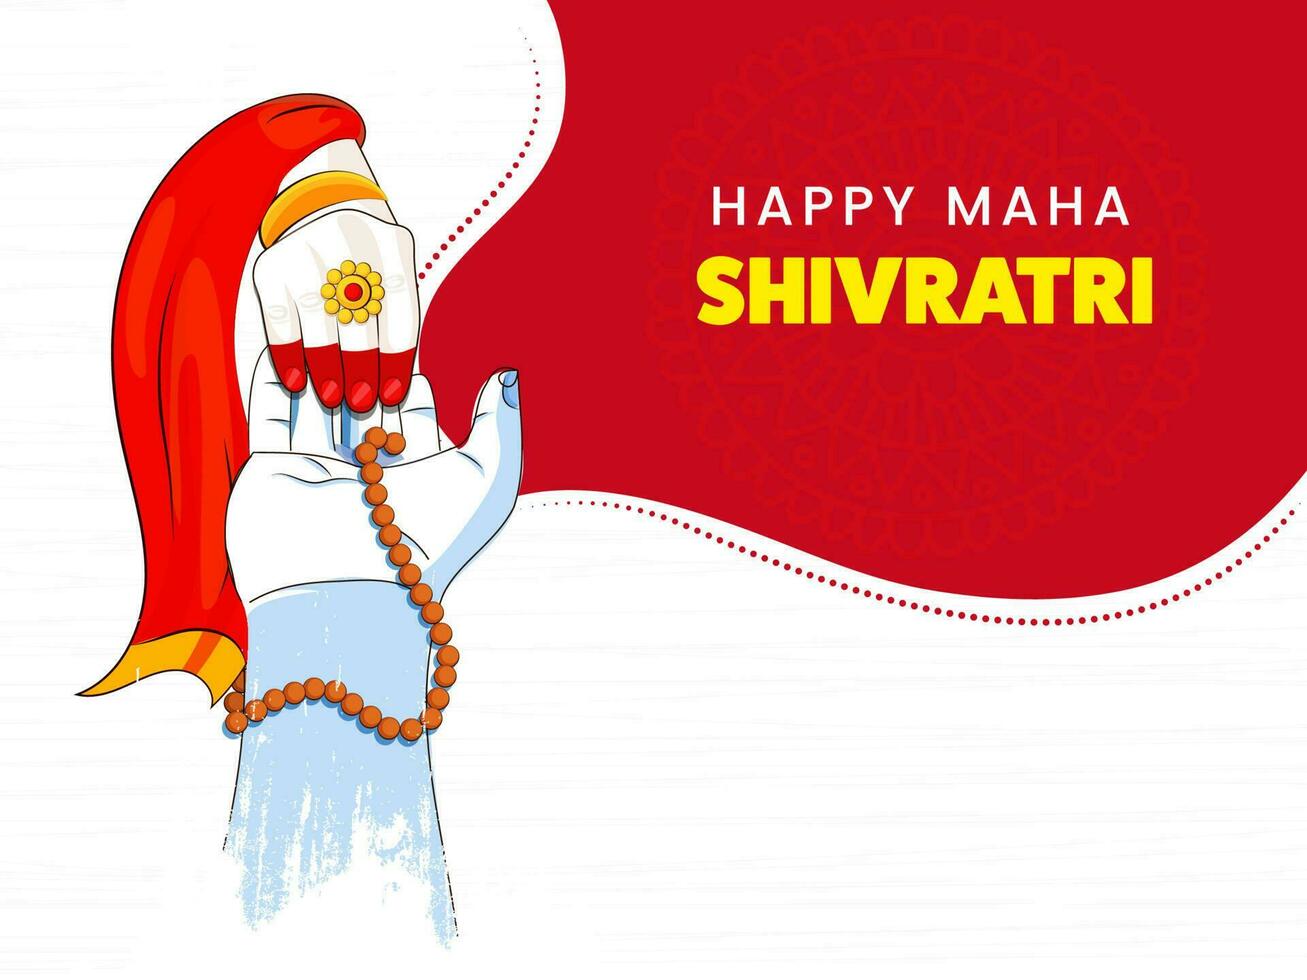 glücklich maha Shivratri Konzept mit Herr Schiwa, Göttin parvati Hände zusammen auf rot und Weiß Hintergrund. vektor